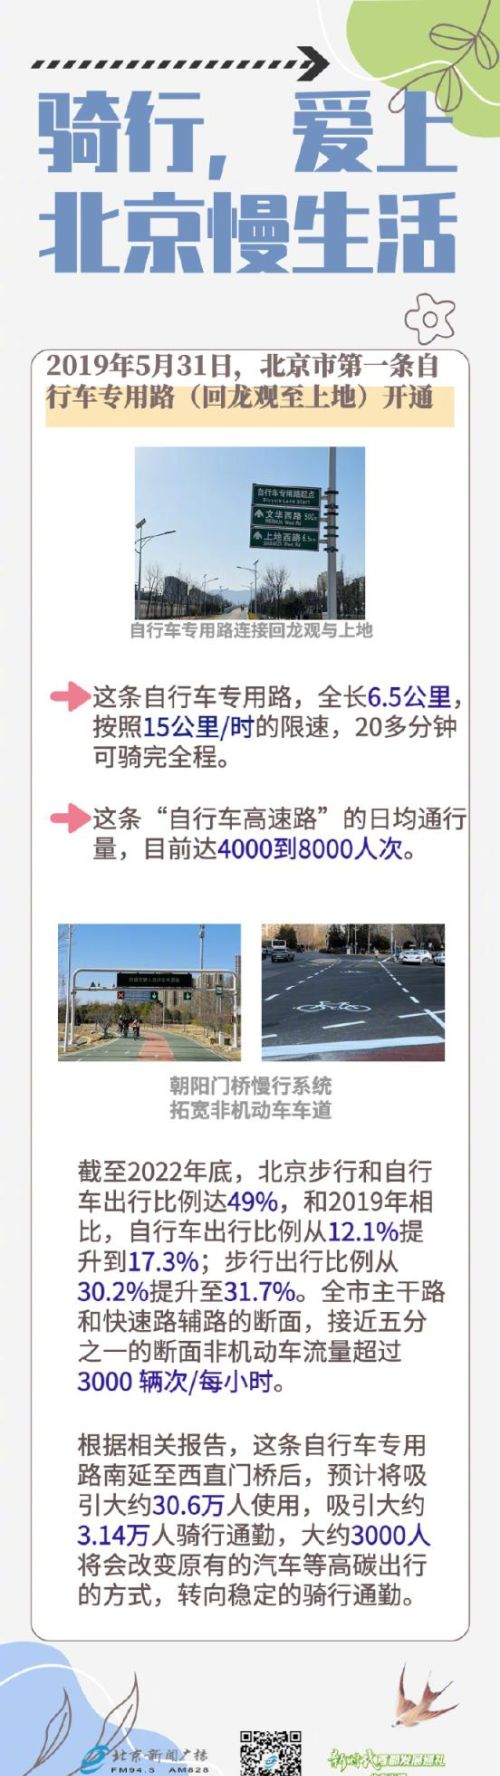 北京第一条自行车专用路继续延长